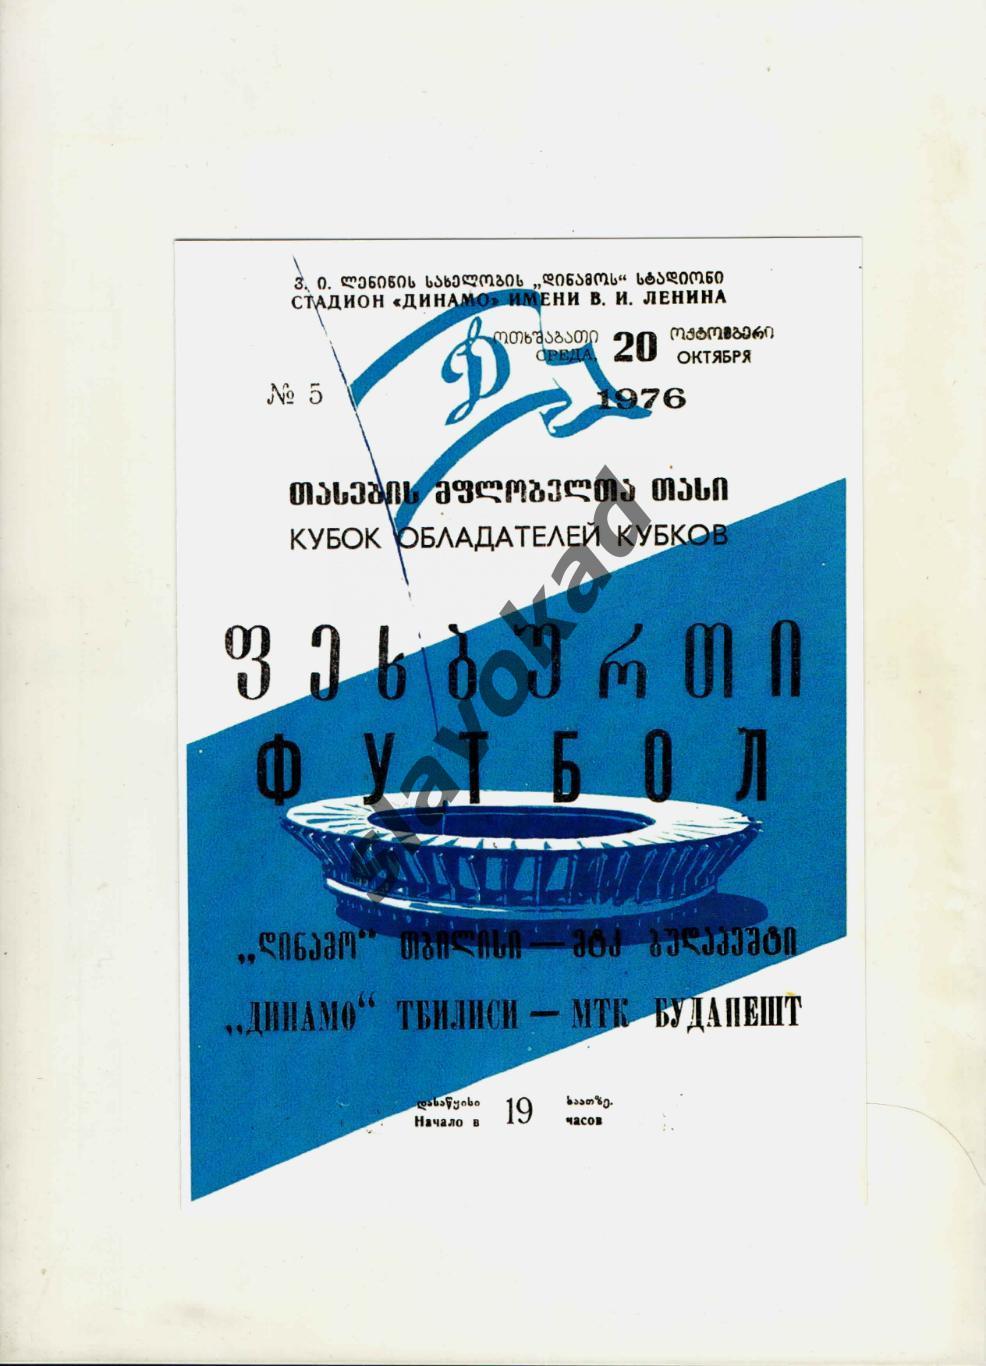 Динамо Тбилиси - МТК Венгрия 20.10.1976 - Кубок Кубков - КОПИЯ